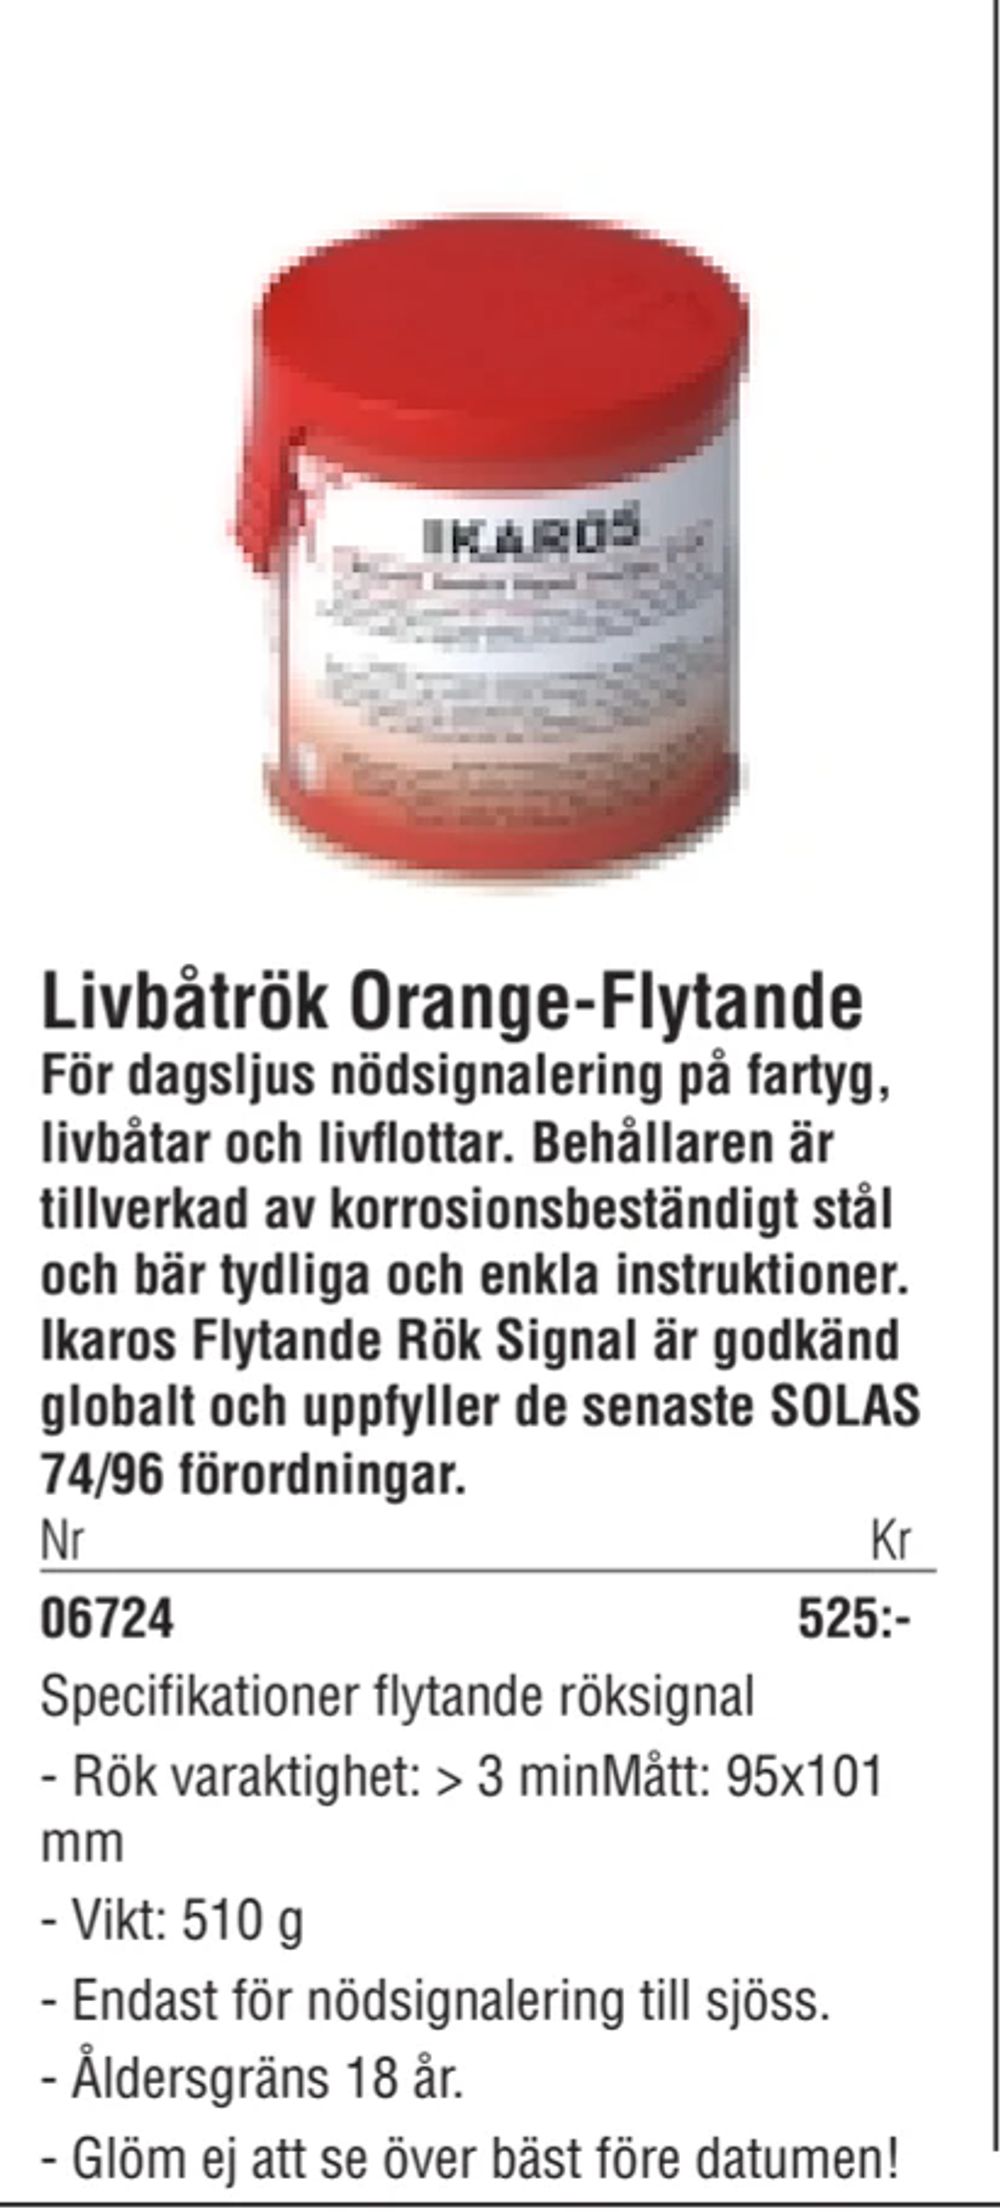 Erbjudanden på Livbåtrök Orange-Flytande från Erlandsons Brygga för 525 kr